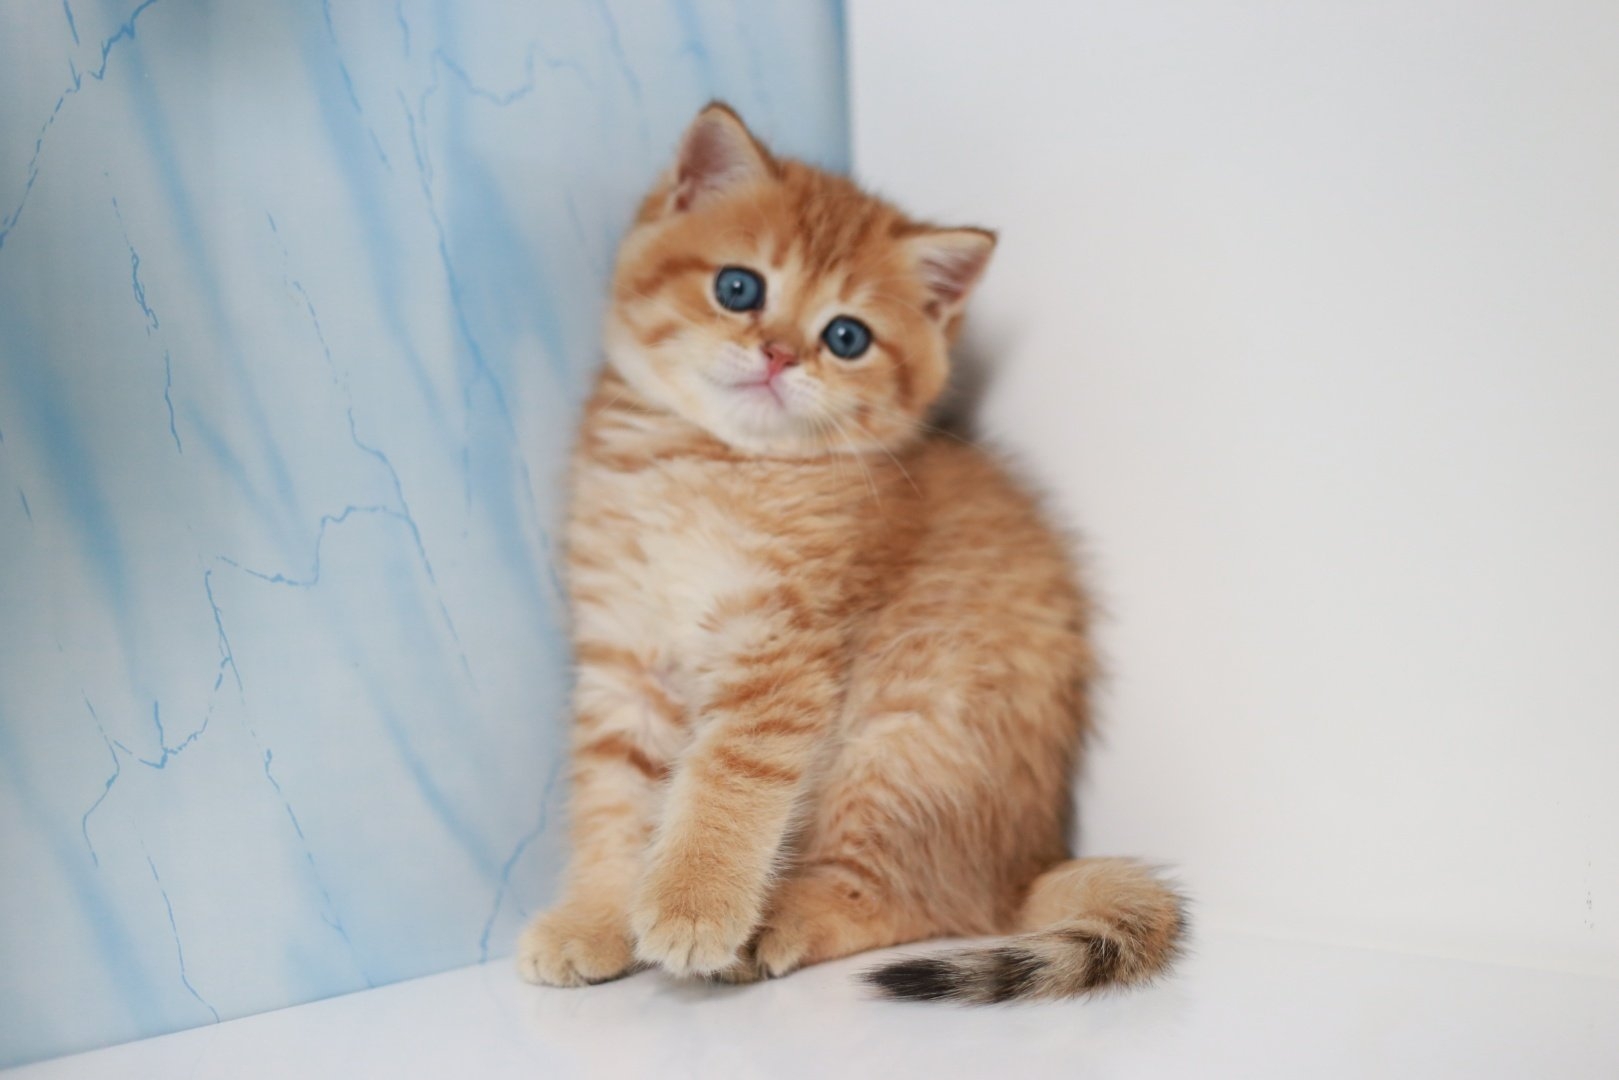 Шотландские кошки прямоухие рыжие - картинки и фото koshka.top